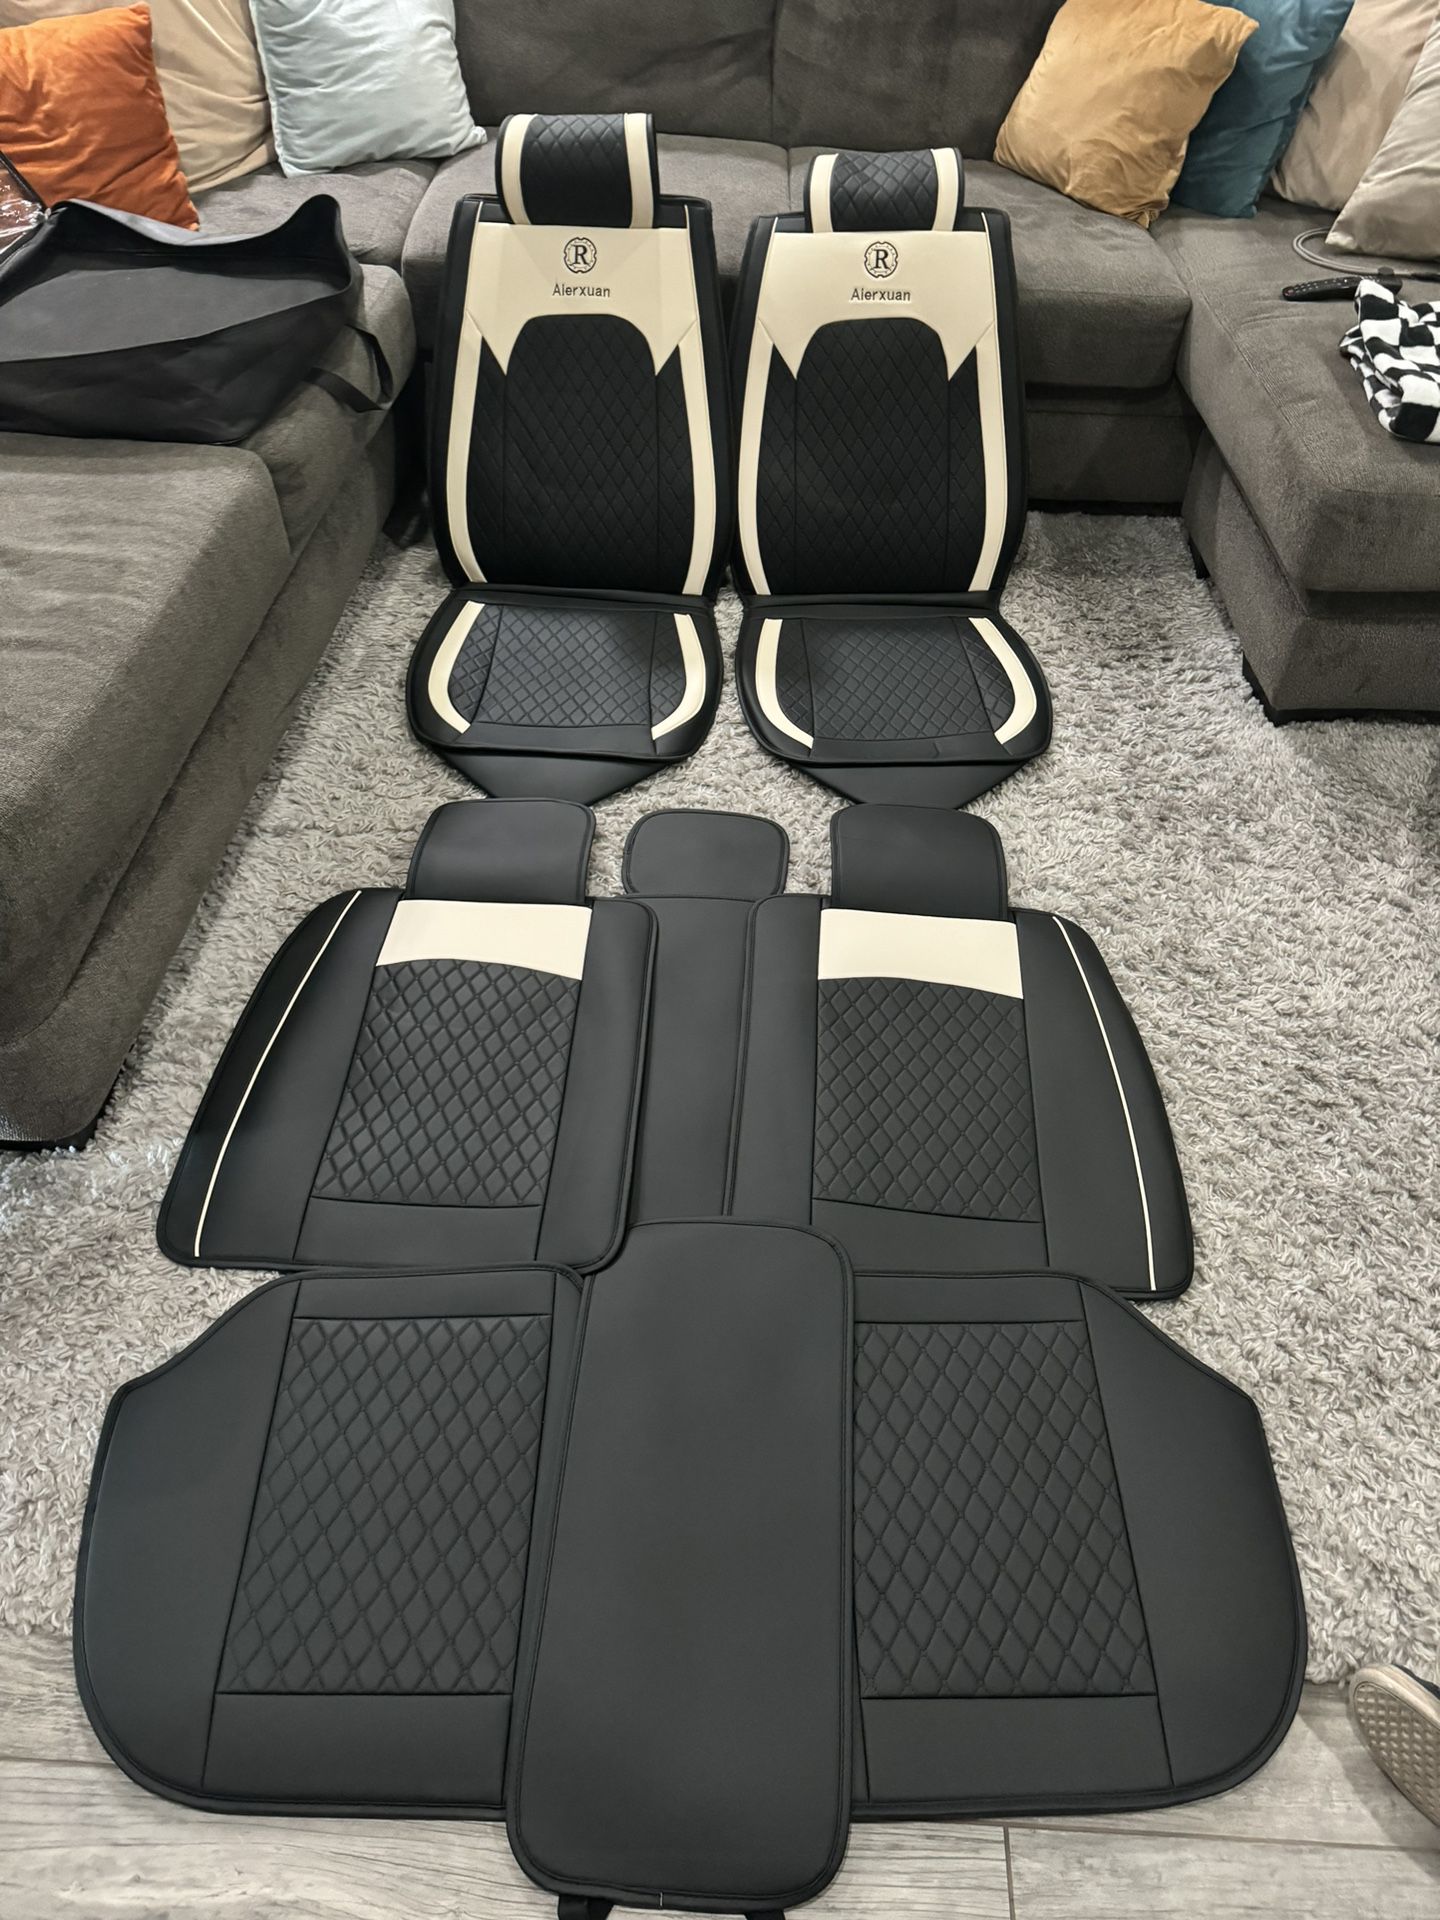 New Full Set Car Seat Covers For Trucks/ Sedans/suvs (universal)